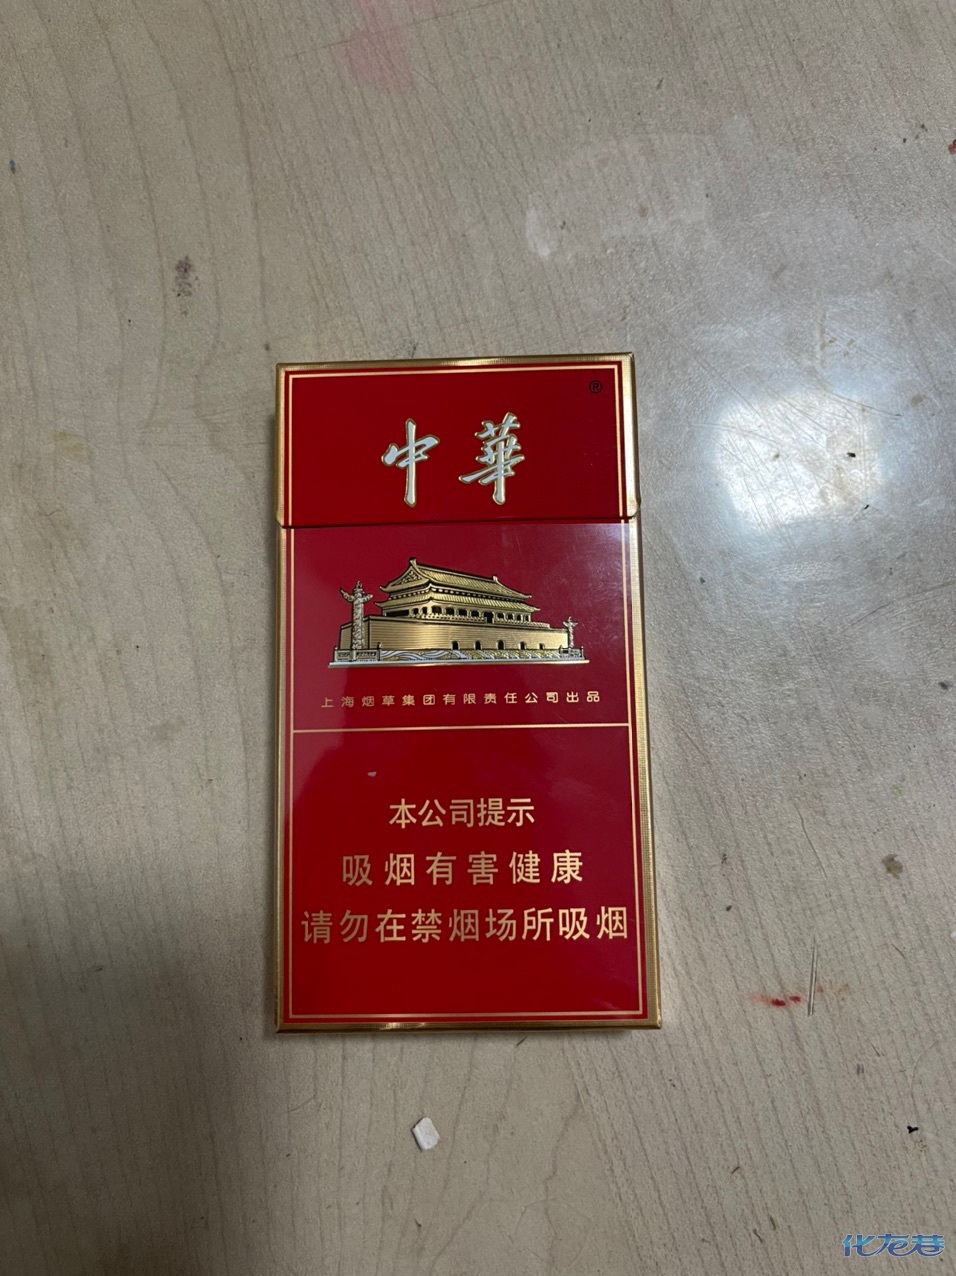 请问有细支的中华烟多少钱一包什么问题吗,包装形式条盒硬盒(每盒,细